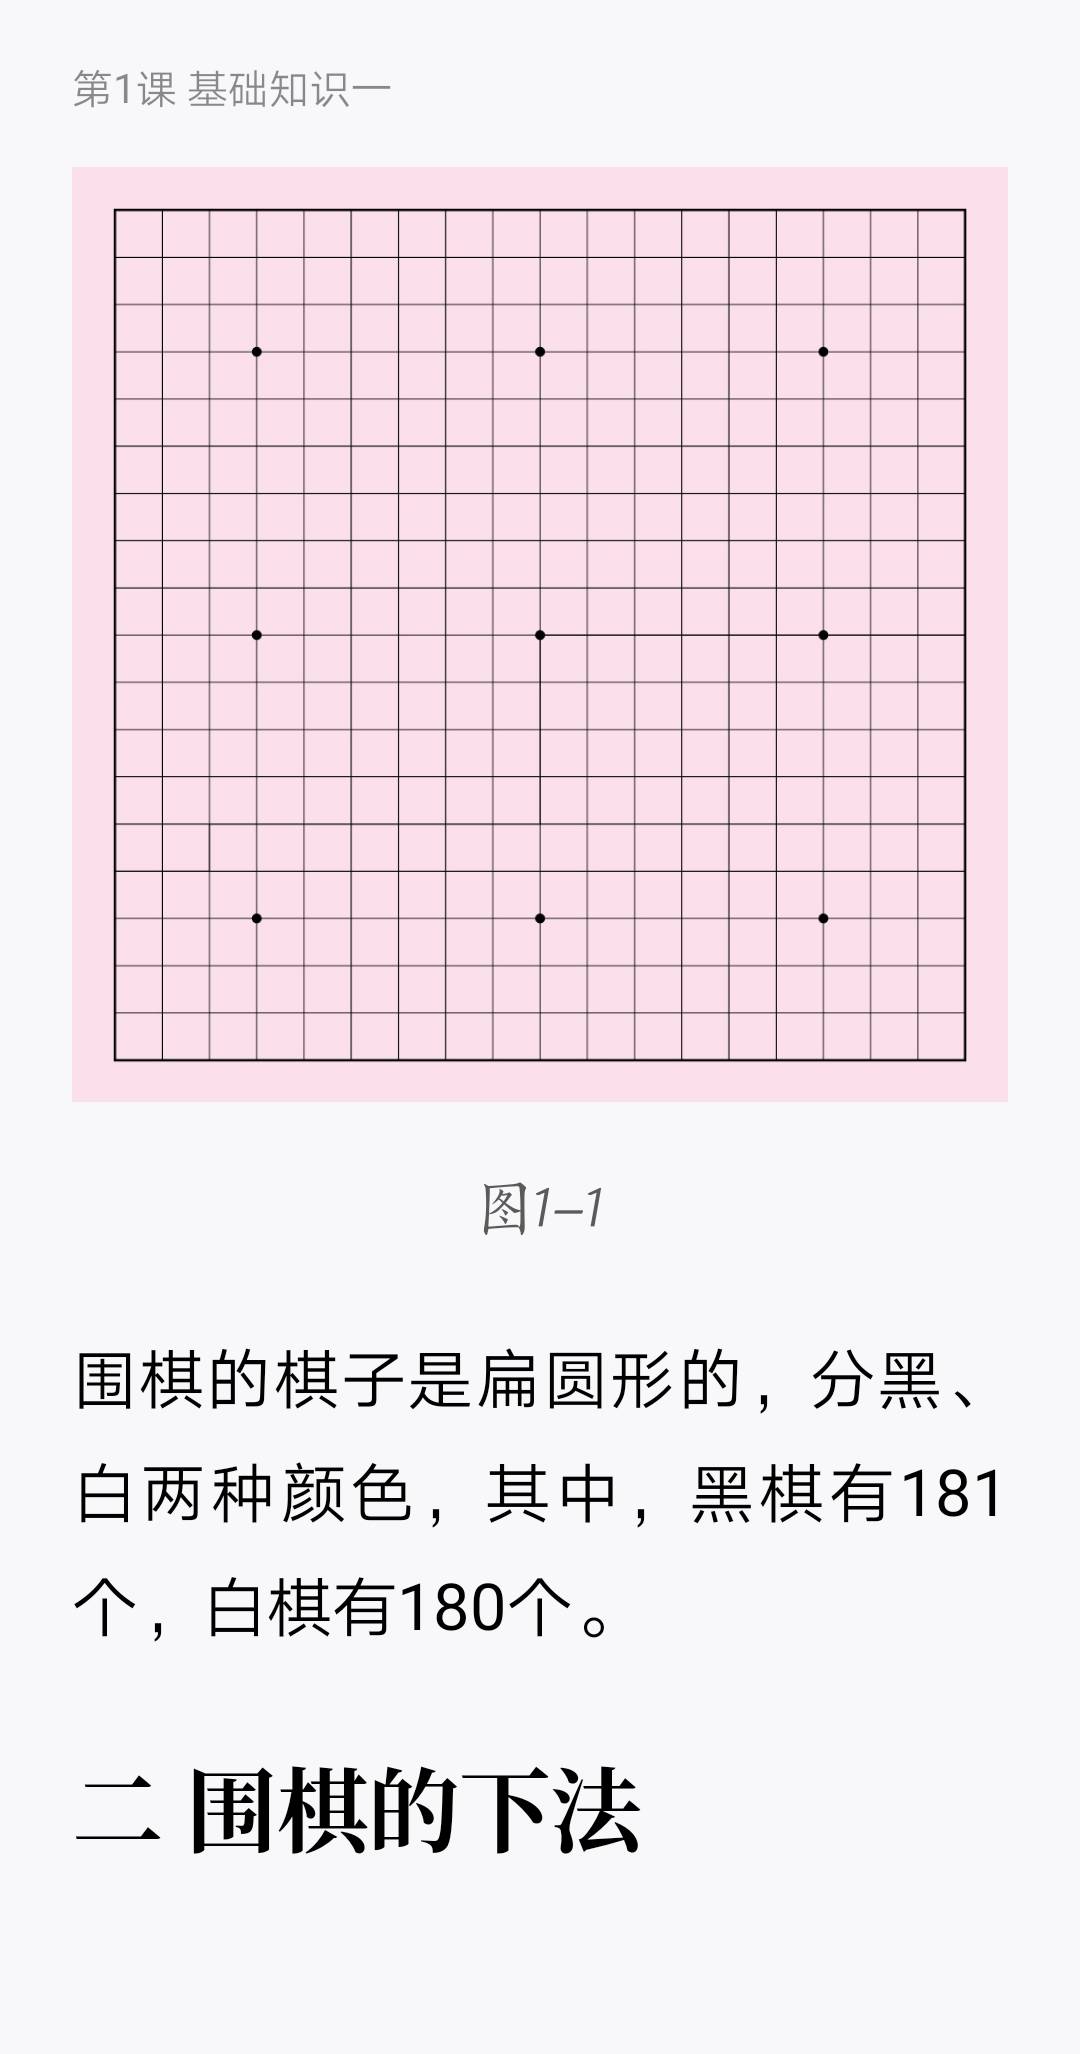 Screenshot_20210401_194744_com.tencent.weread.jpg